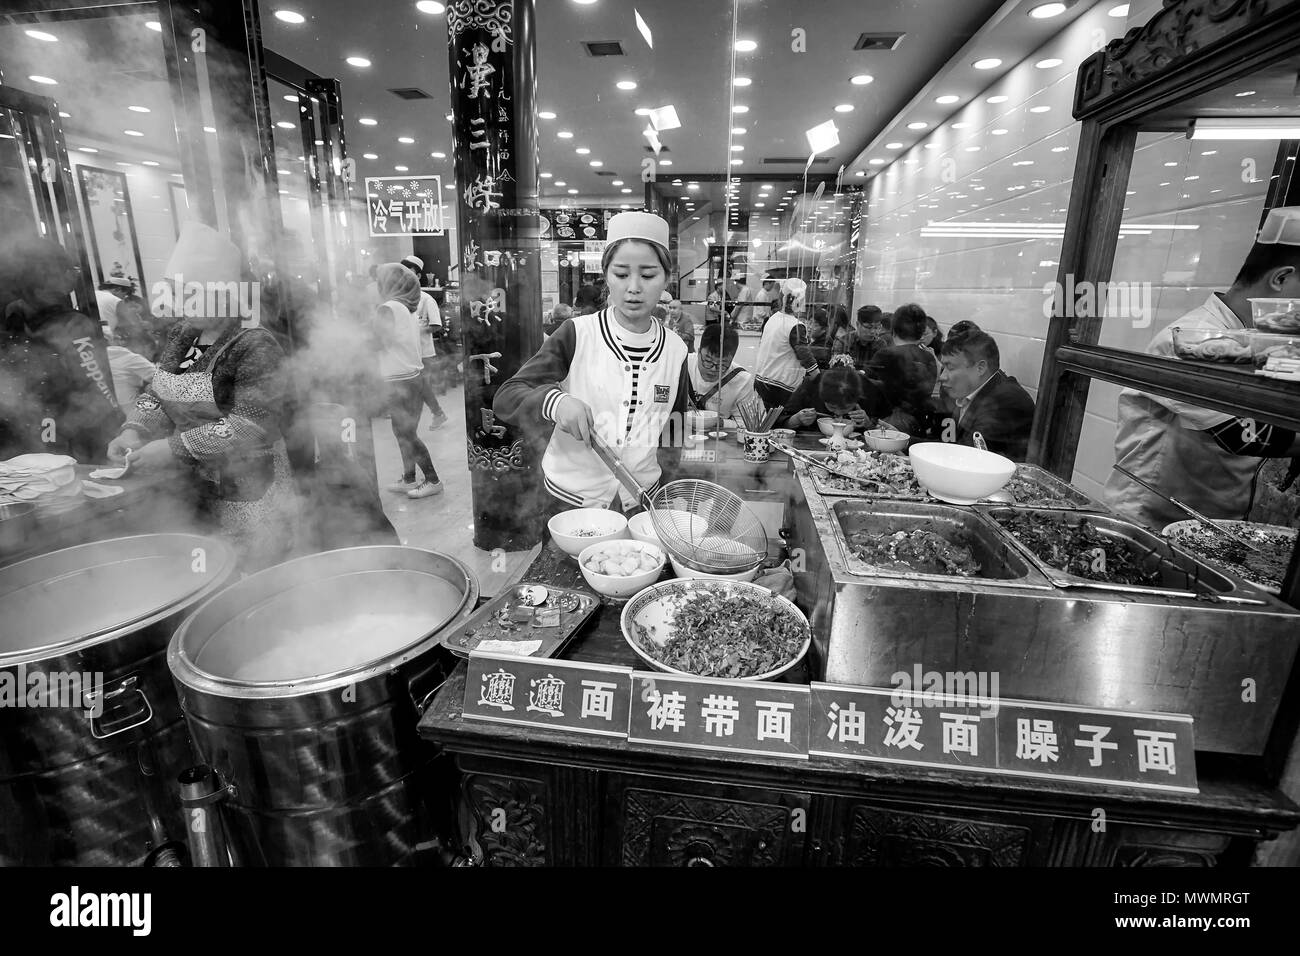 Xian, China - Octubre 5, 2017: la preparación de los alimentos de la calle en el Barrio Musulmán, conocido sitio turístico famoso por su cultura y comida. Foto de stock